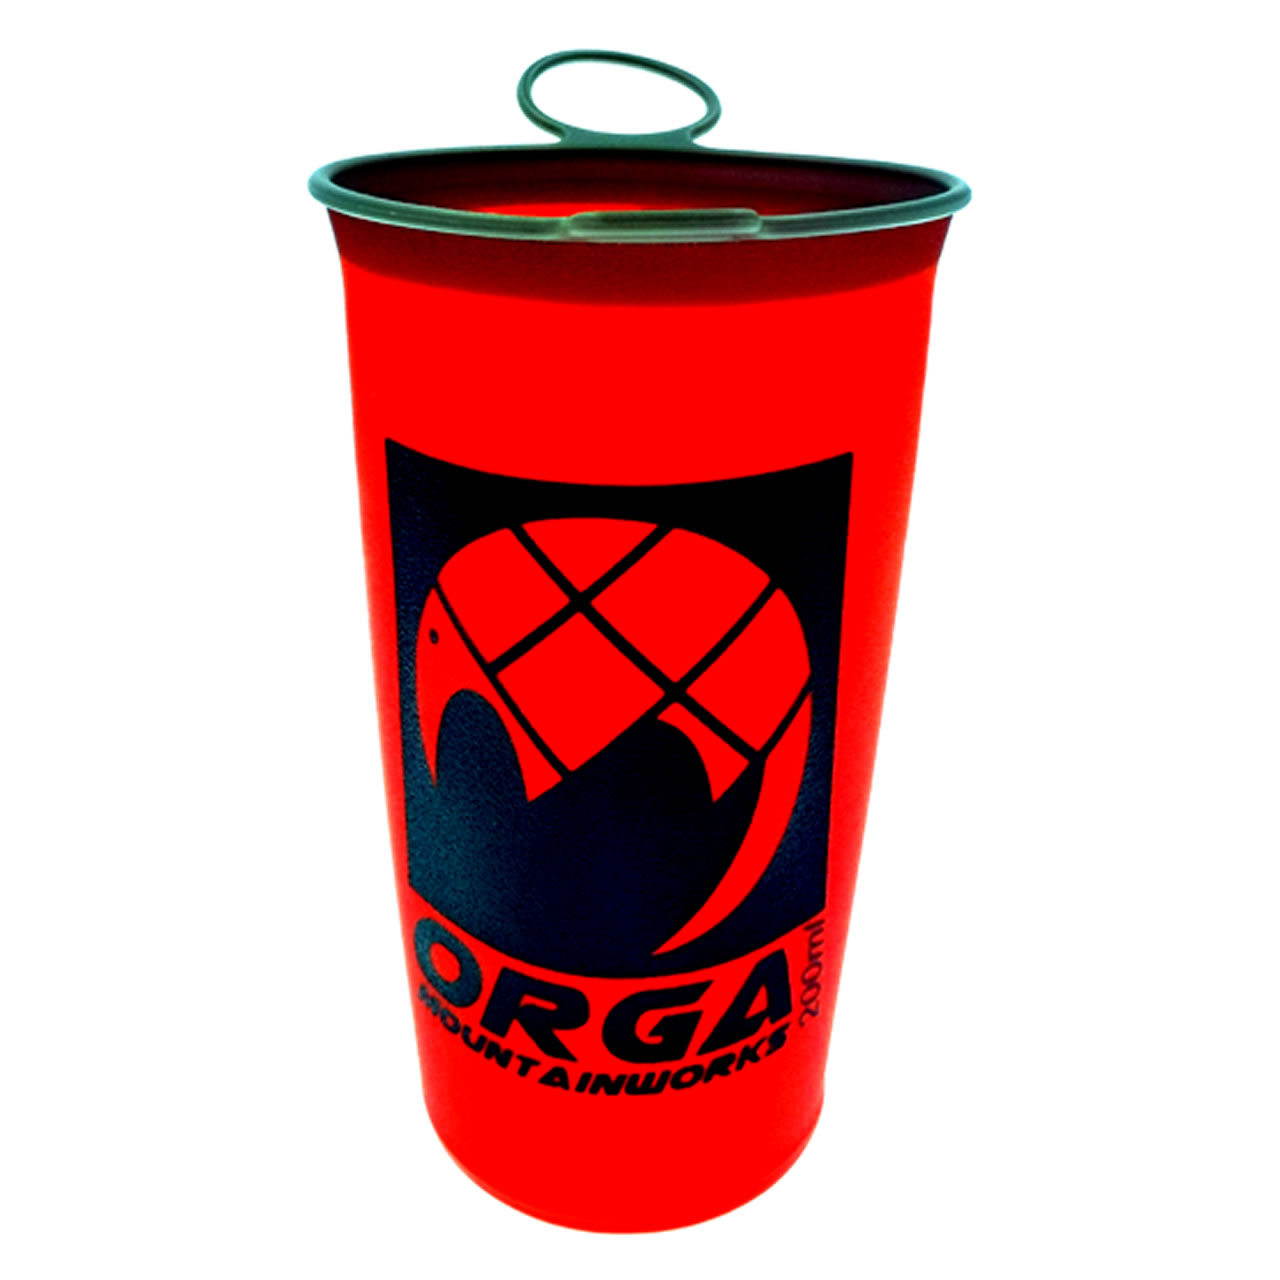 Orga Soft Cup 200ml